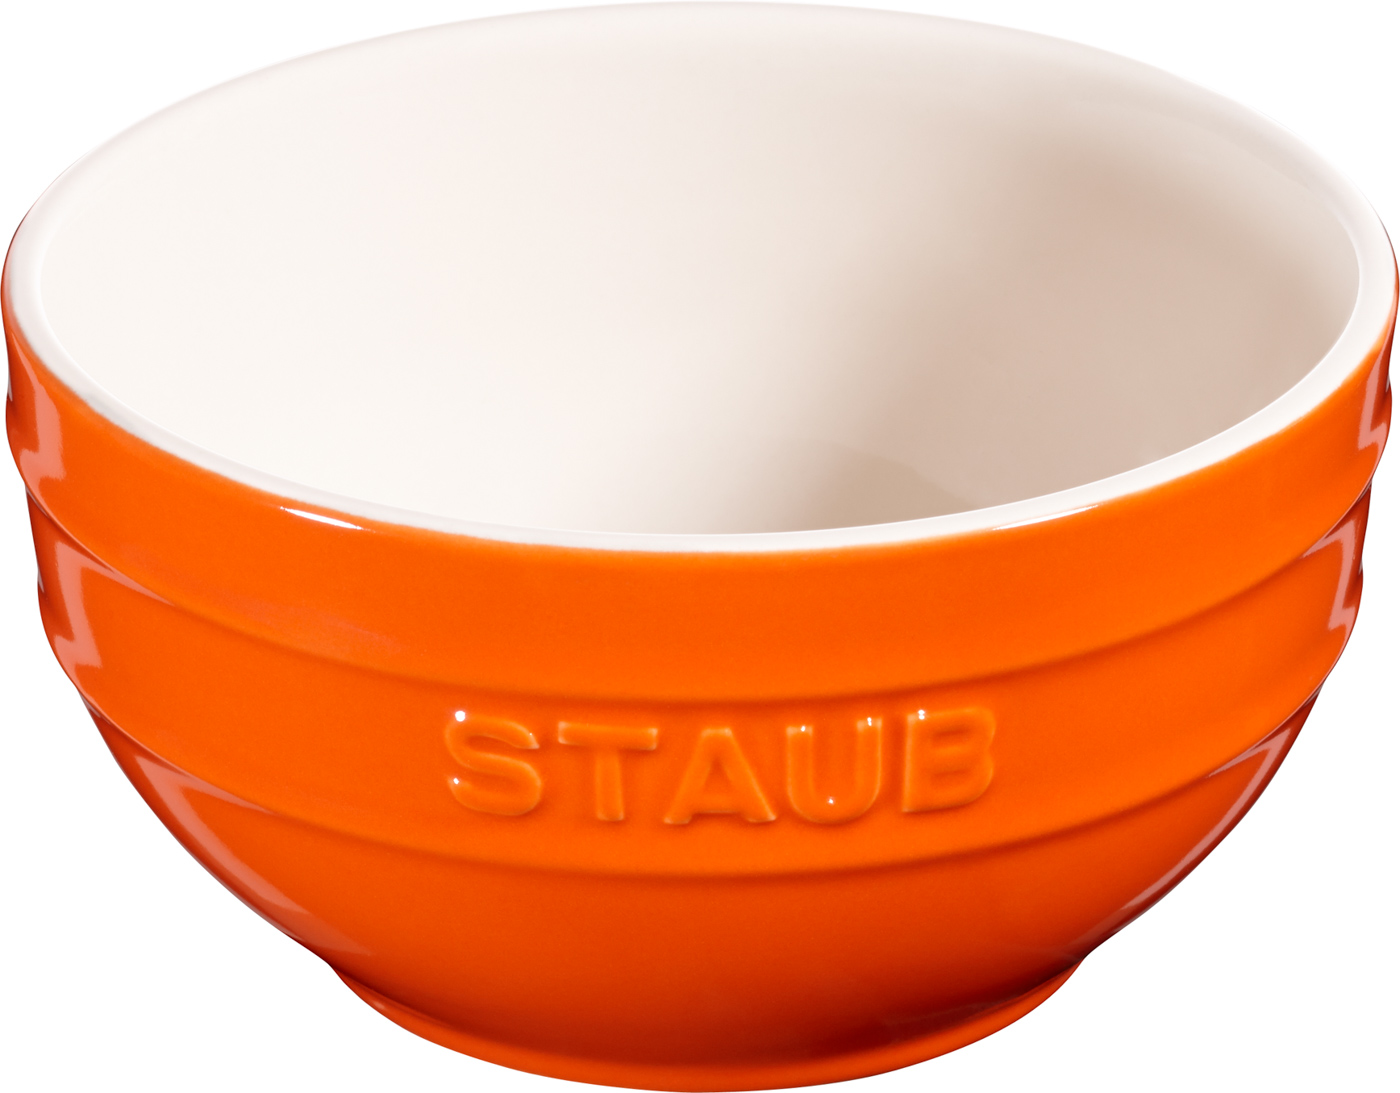 Schüssel, 14 cm, Orange, Keramik, Serie: Ceramique. Marke: Staub